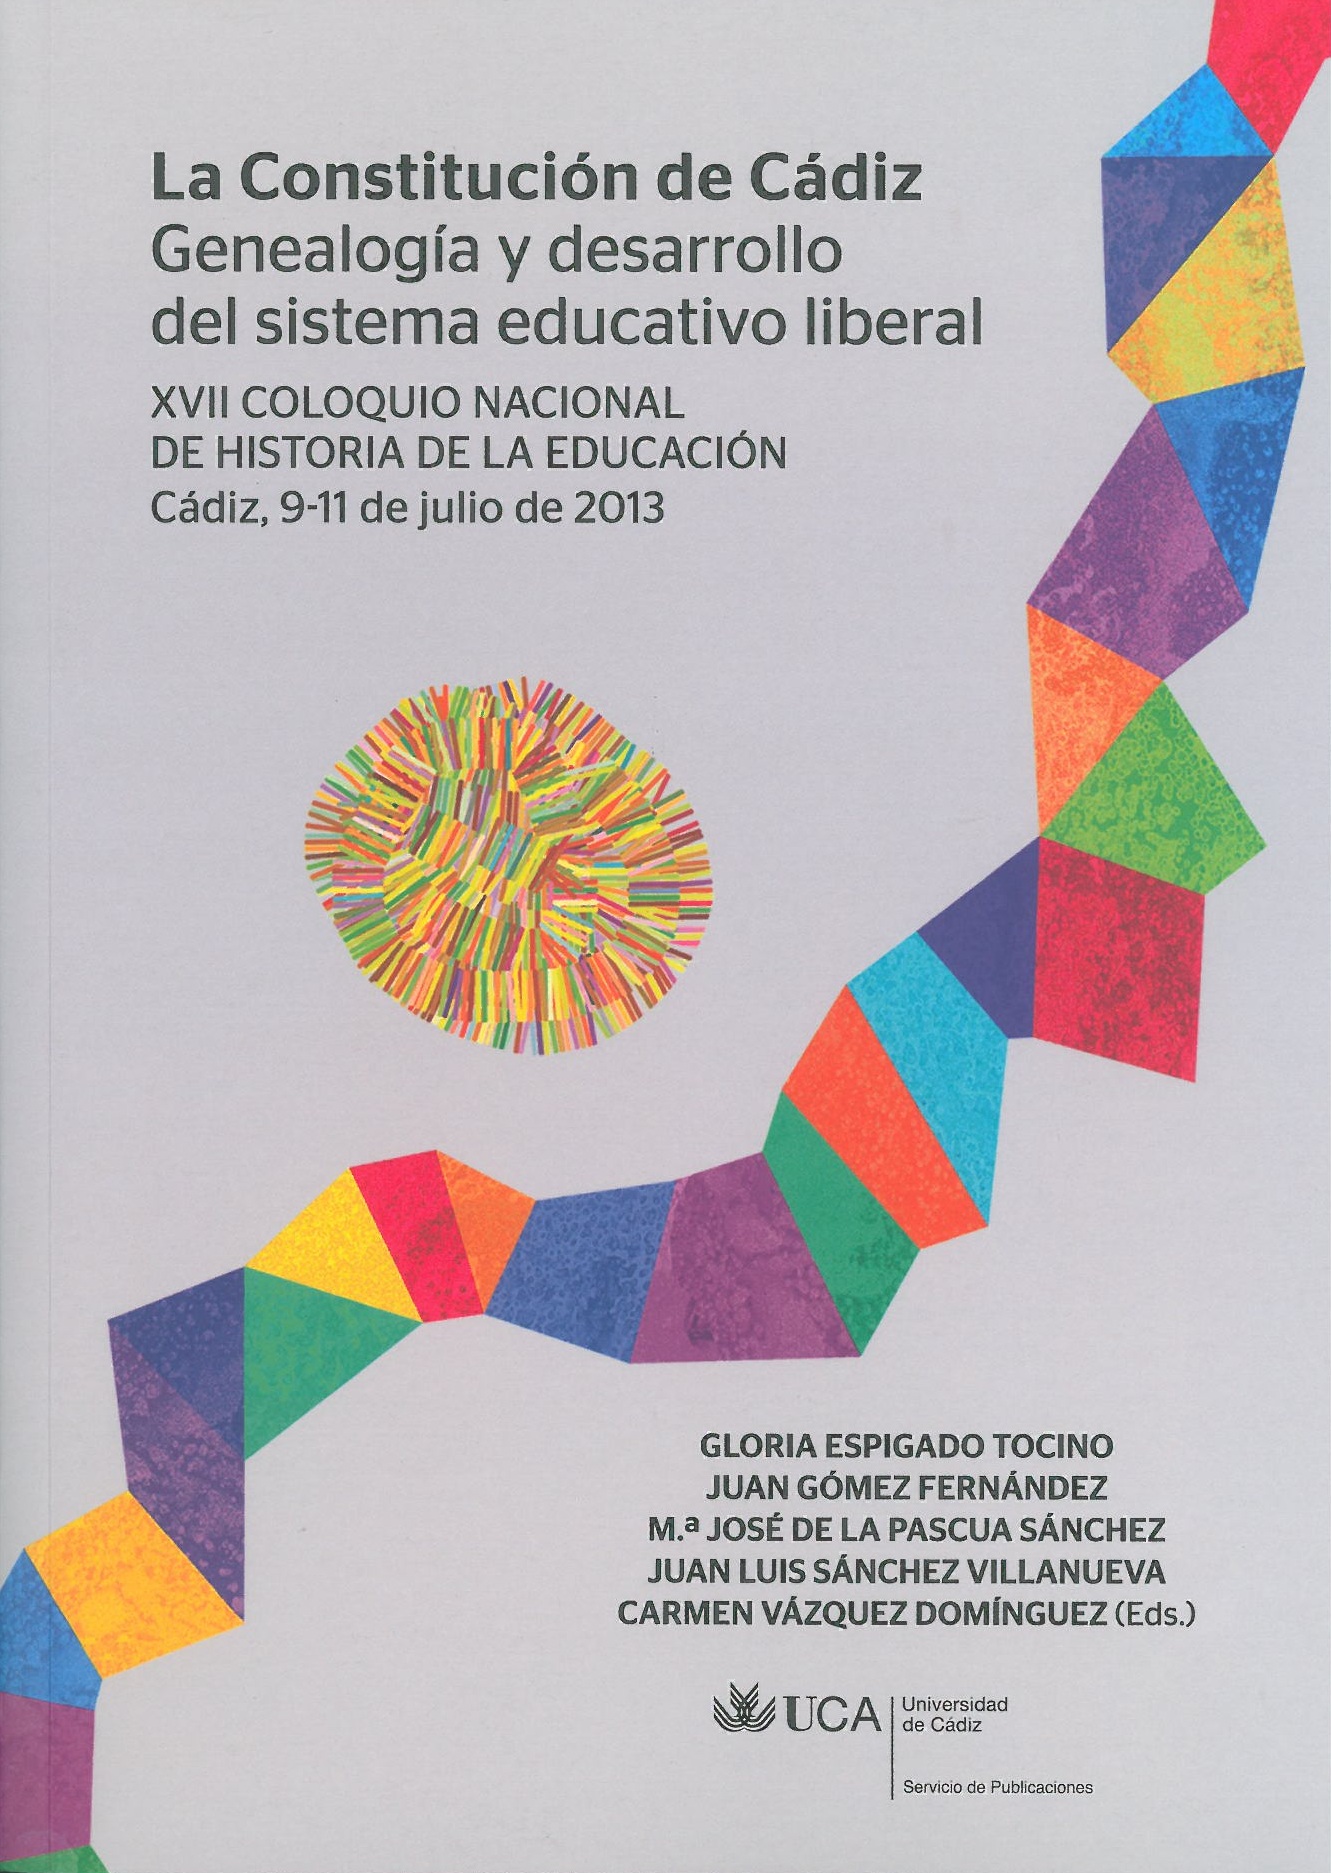 La Constitución de Cádiz. Genealogía y Desarrollo del Sistema Educativo Liberal: XVII Coloquio Nacional de Historia de la Educación. Cádiz 9-11 de Julio de 2013